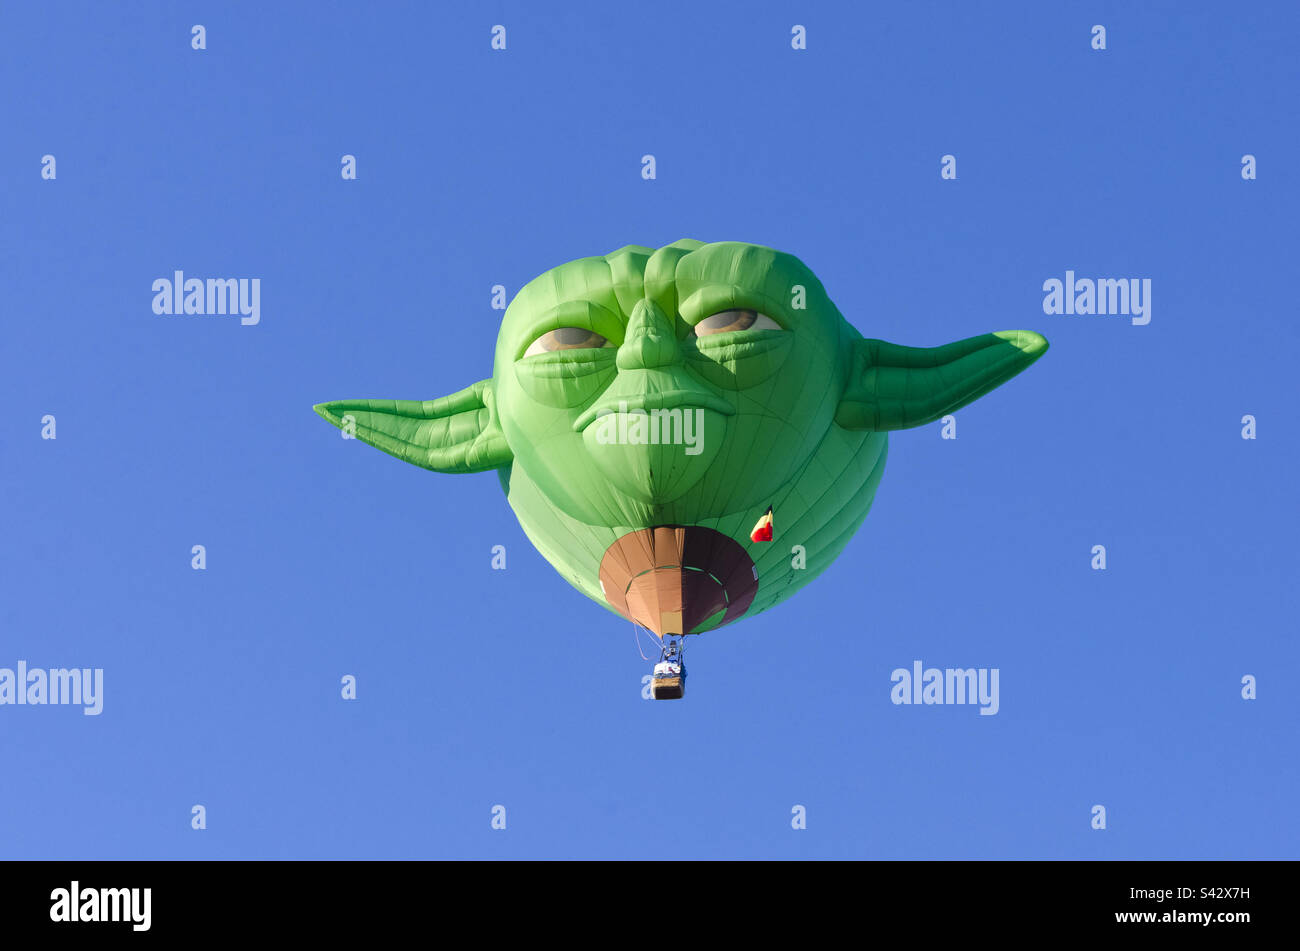 Star Wars Yoda hot air balloon, flying in the balloon fiesta in Albuquerque New Mexico Stock Photo